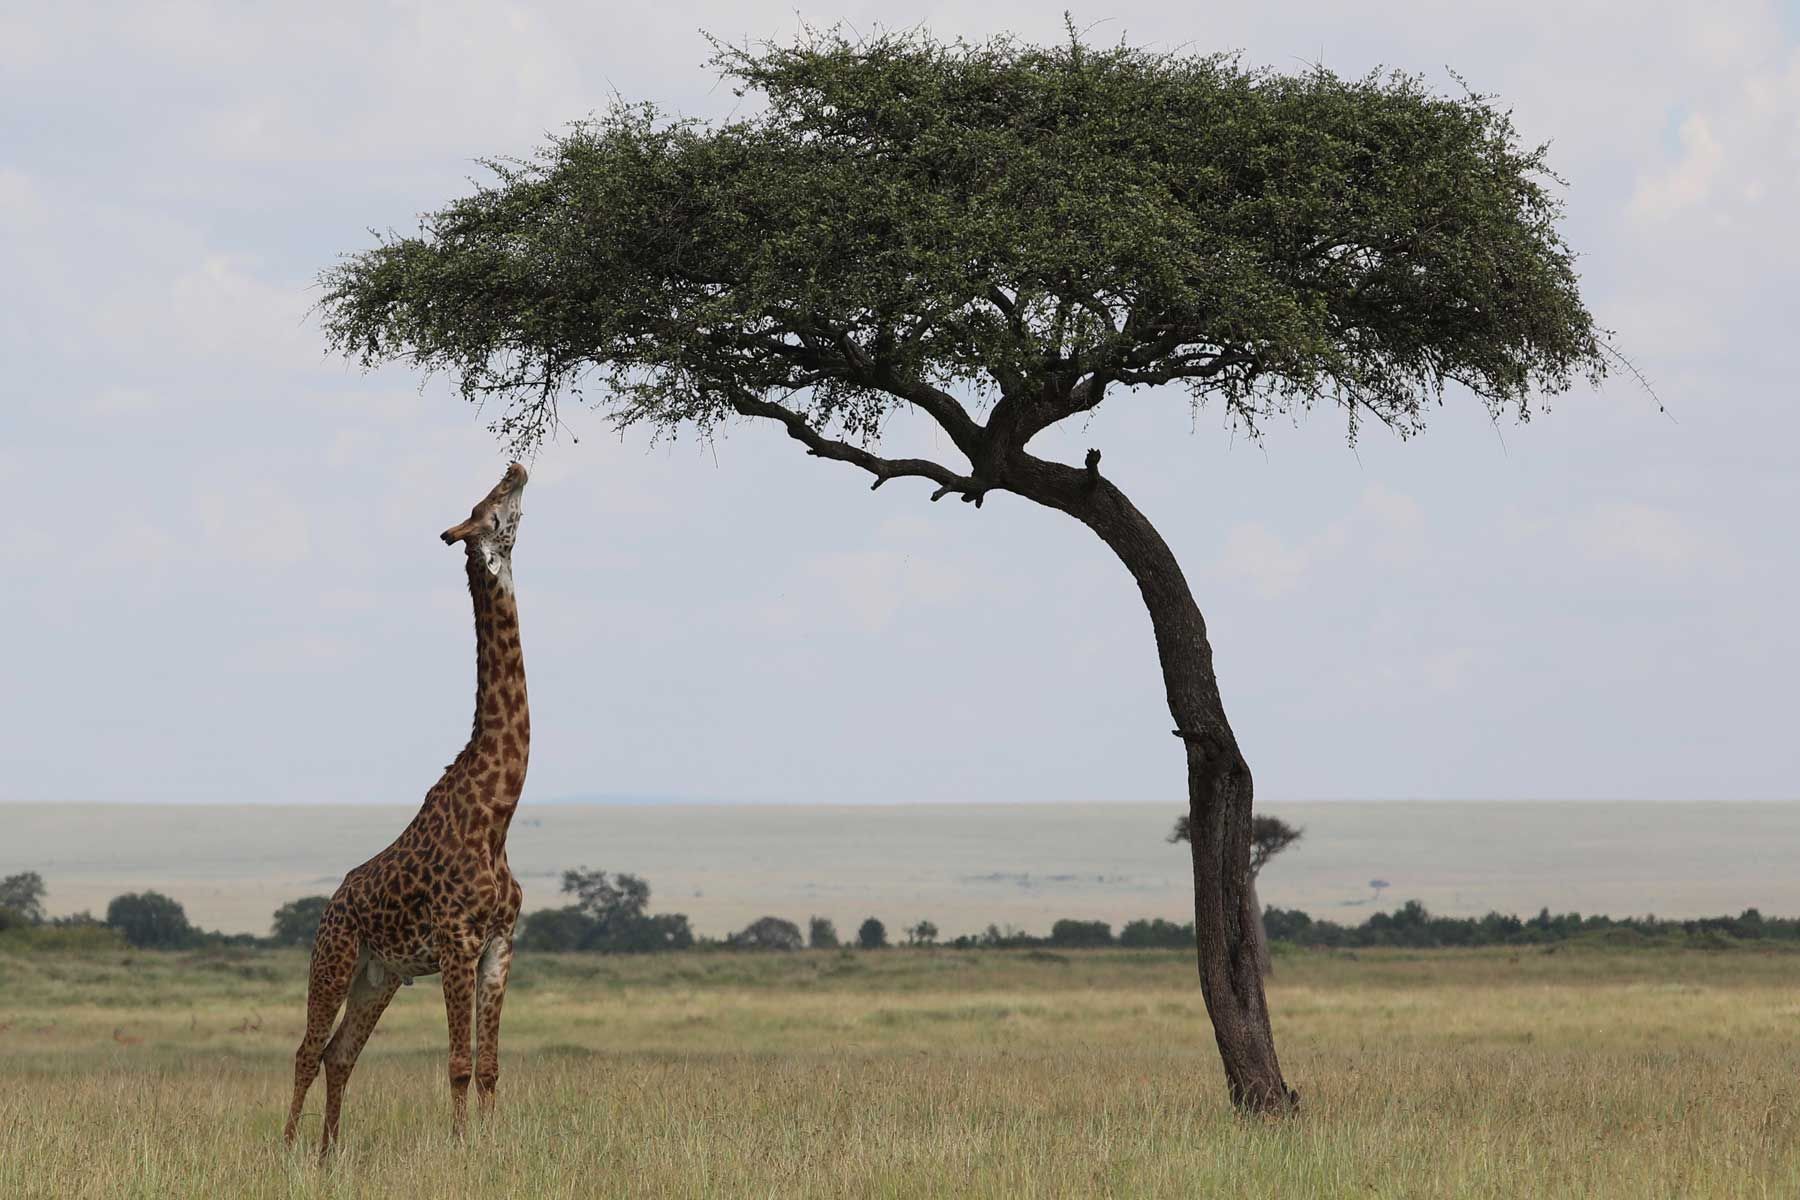 Kilimanjaro-Giraffen sind ein alltäglicher Anblick auf Rothschild Safaris Reisen durch Kenia